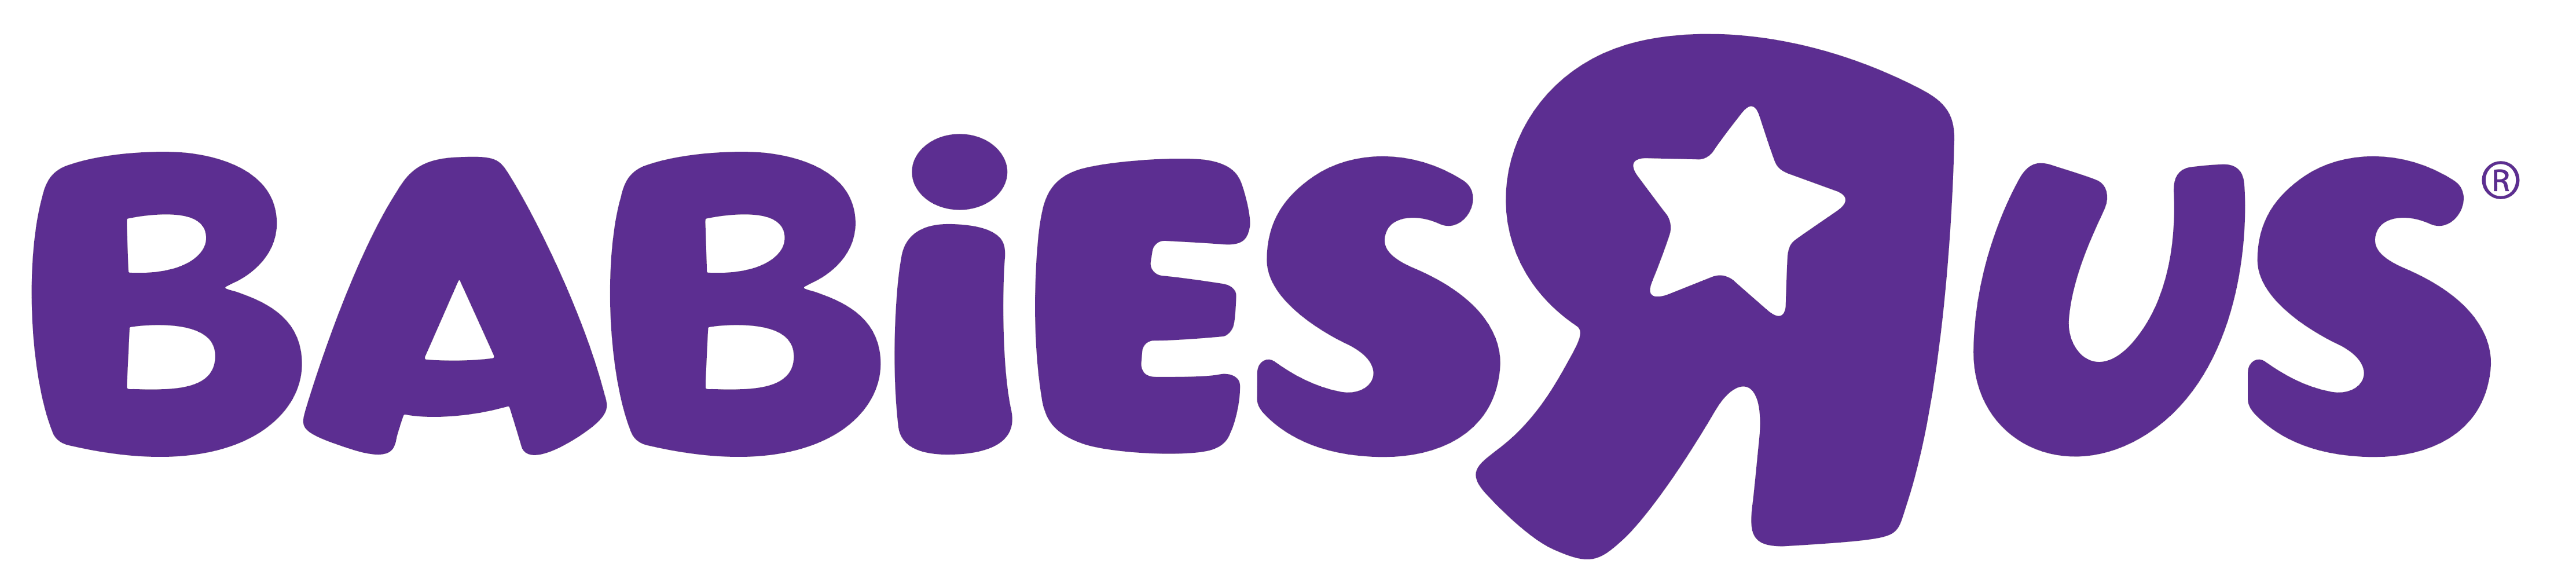 Babies R Us logo, logotype